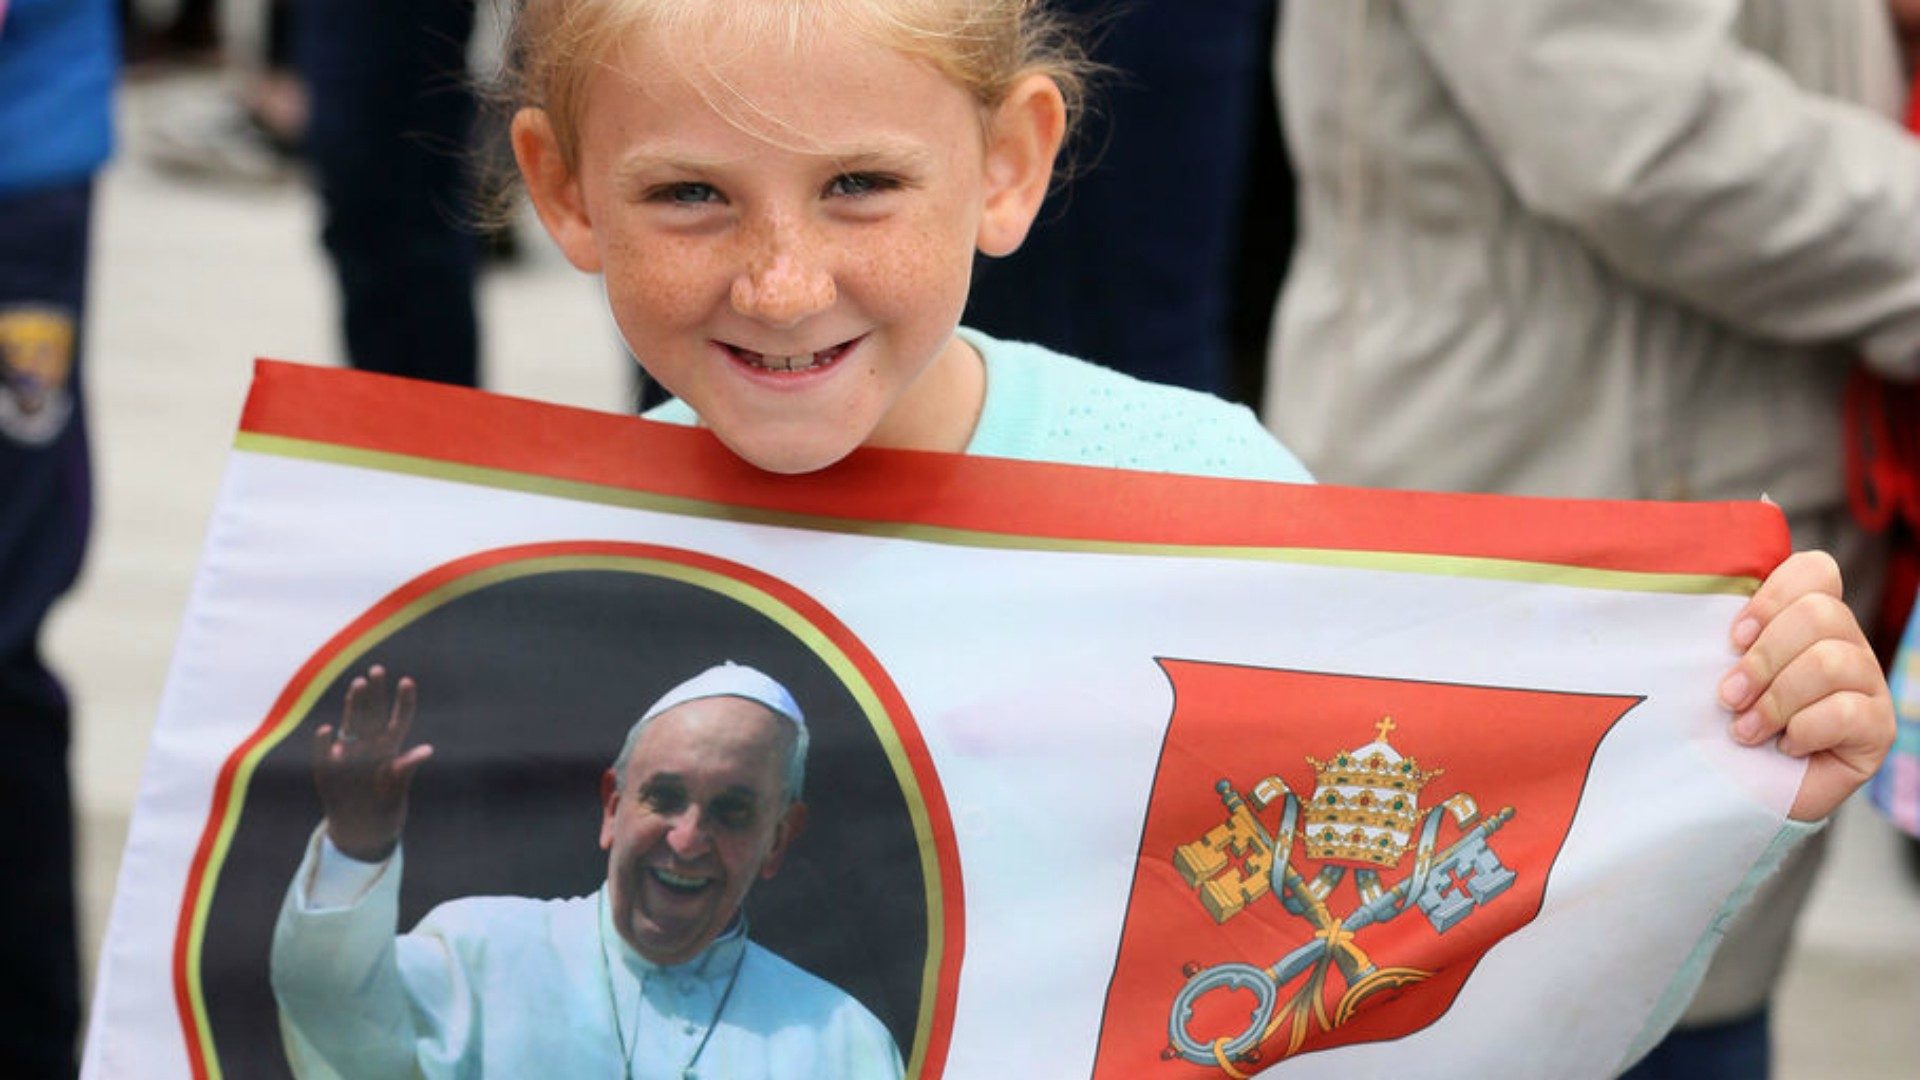 Le pape a reçu un accueil chaleureux de nombreux enfants | © Brian Lawless/Keystone